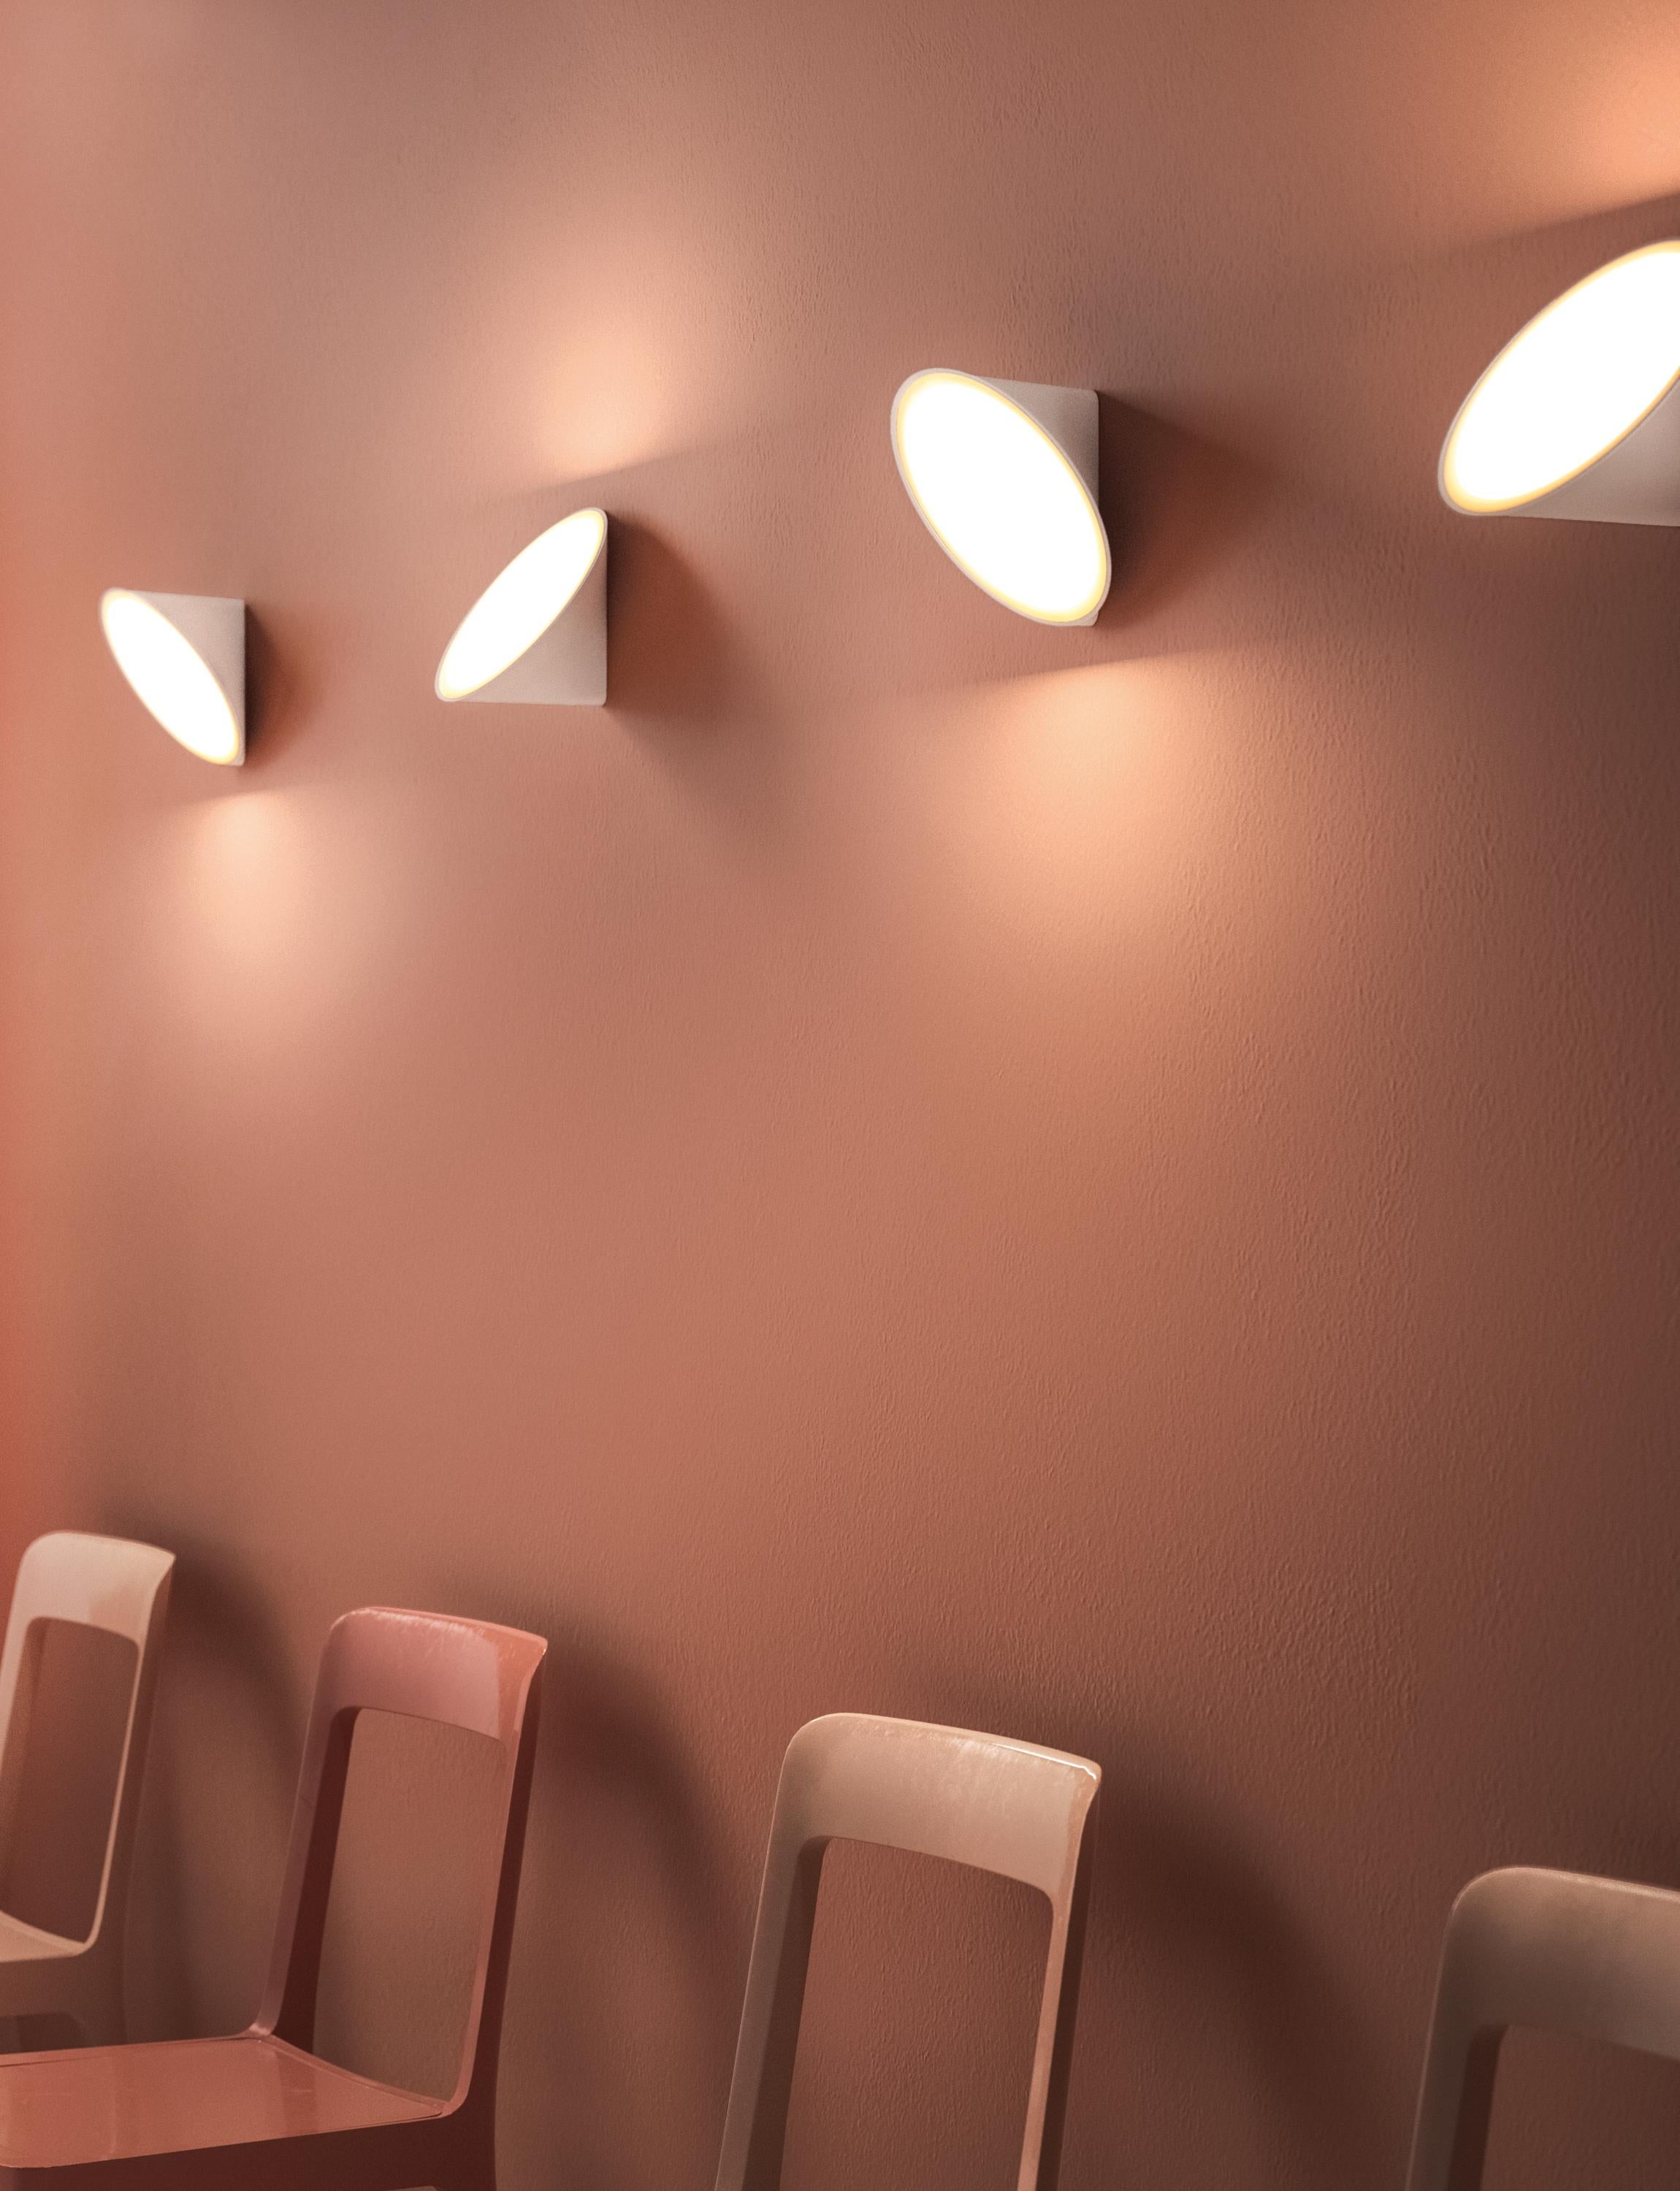 Axolight Orchid Wand-/Deckenleuchte mit Aluminiumdruckgussgehäuse in Weiß von Rainer Mutsch

Das Orchideendesign drückt mit seinen prächtigen Stängeln und Knospen den Zauber der Natur aus. Direkte Lichtstrahlen wie Sonnenstrahlen und intensives,